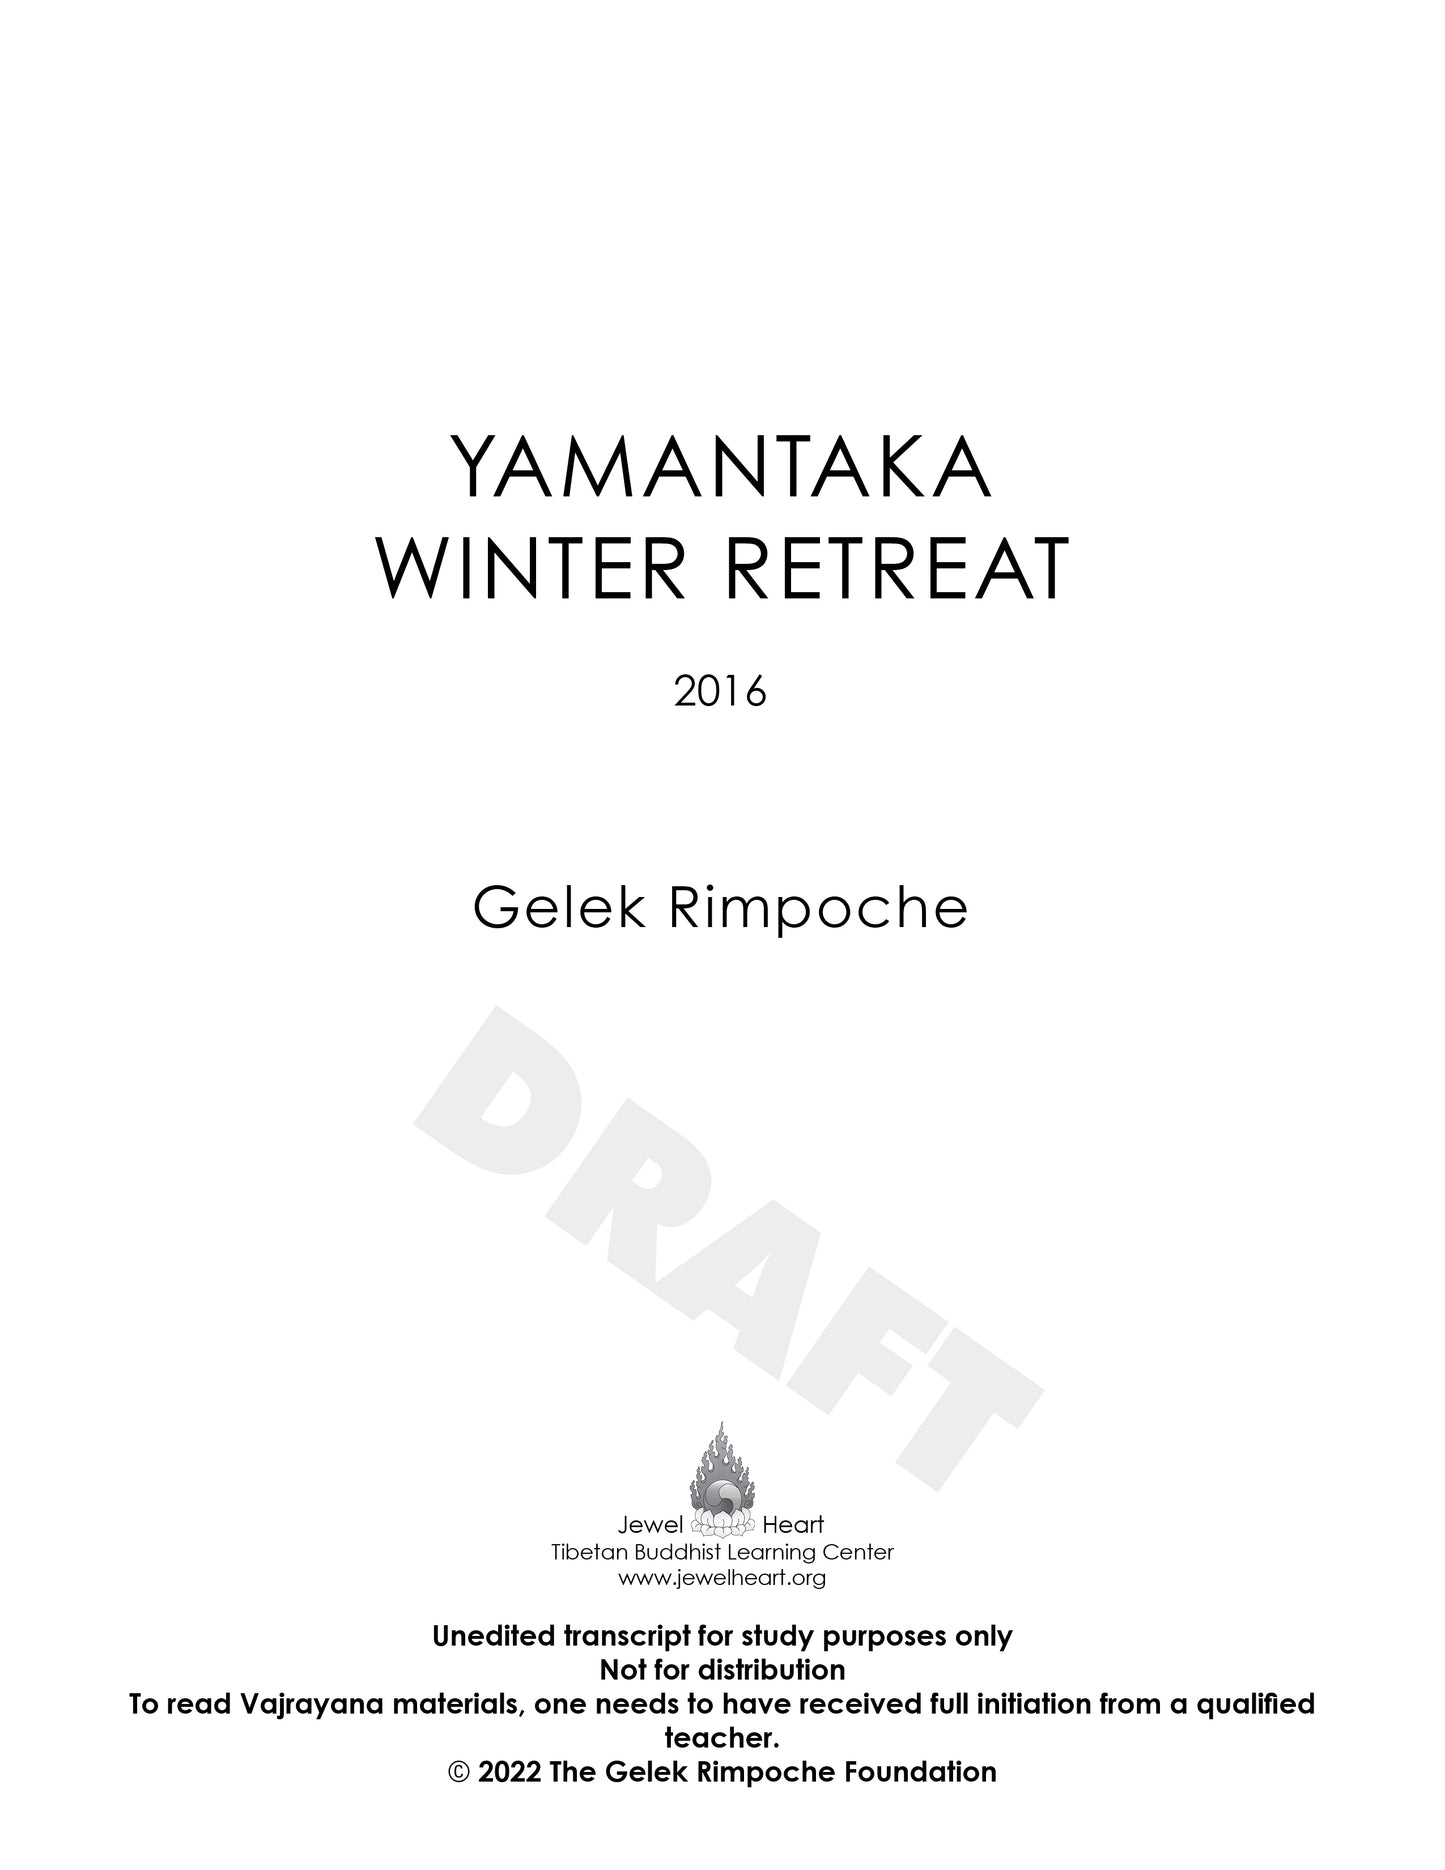 YAMANTAKA WINTER RETREAT - 2016